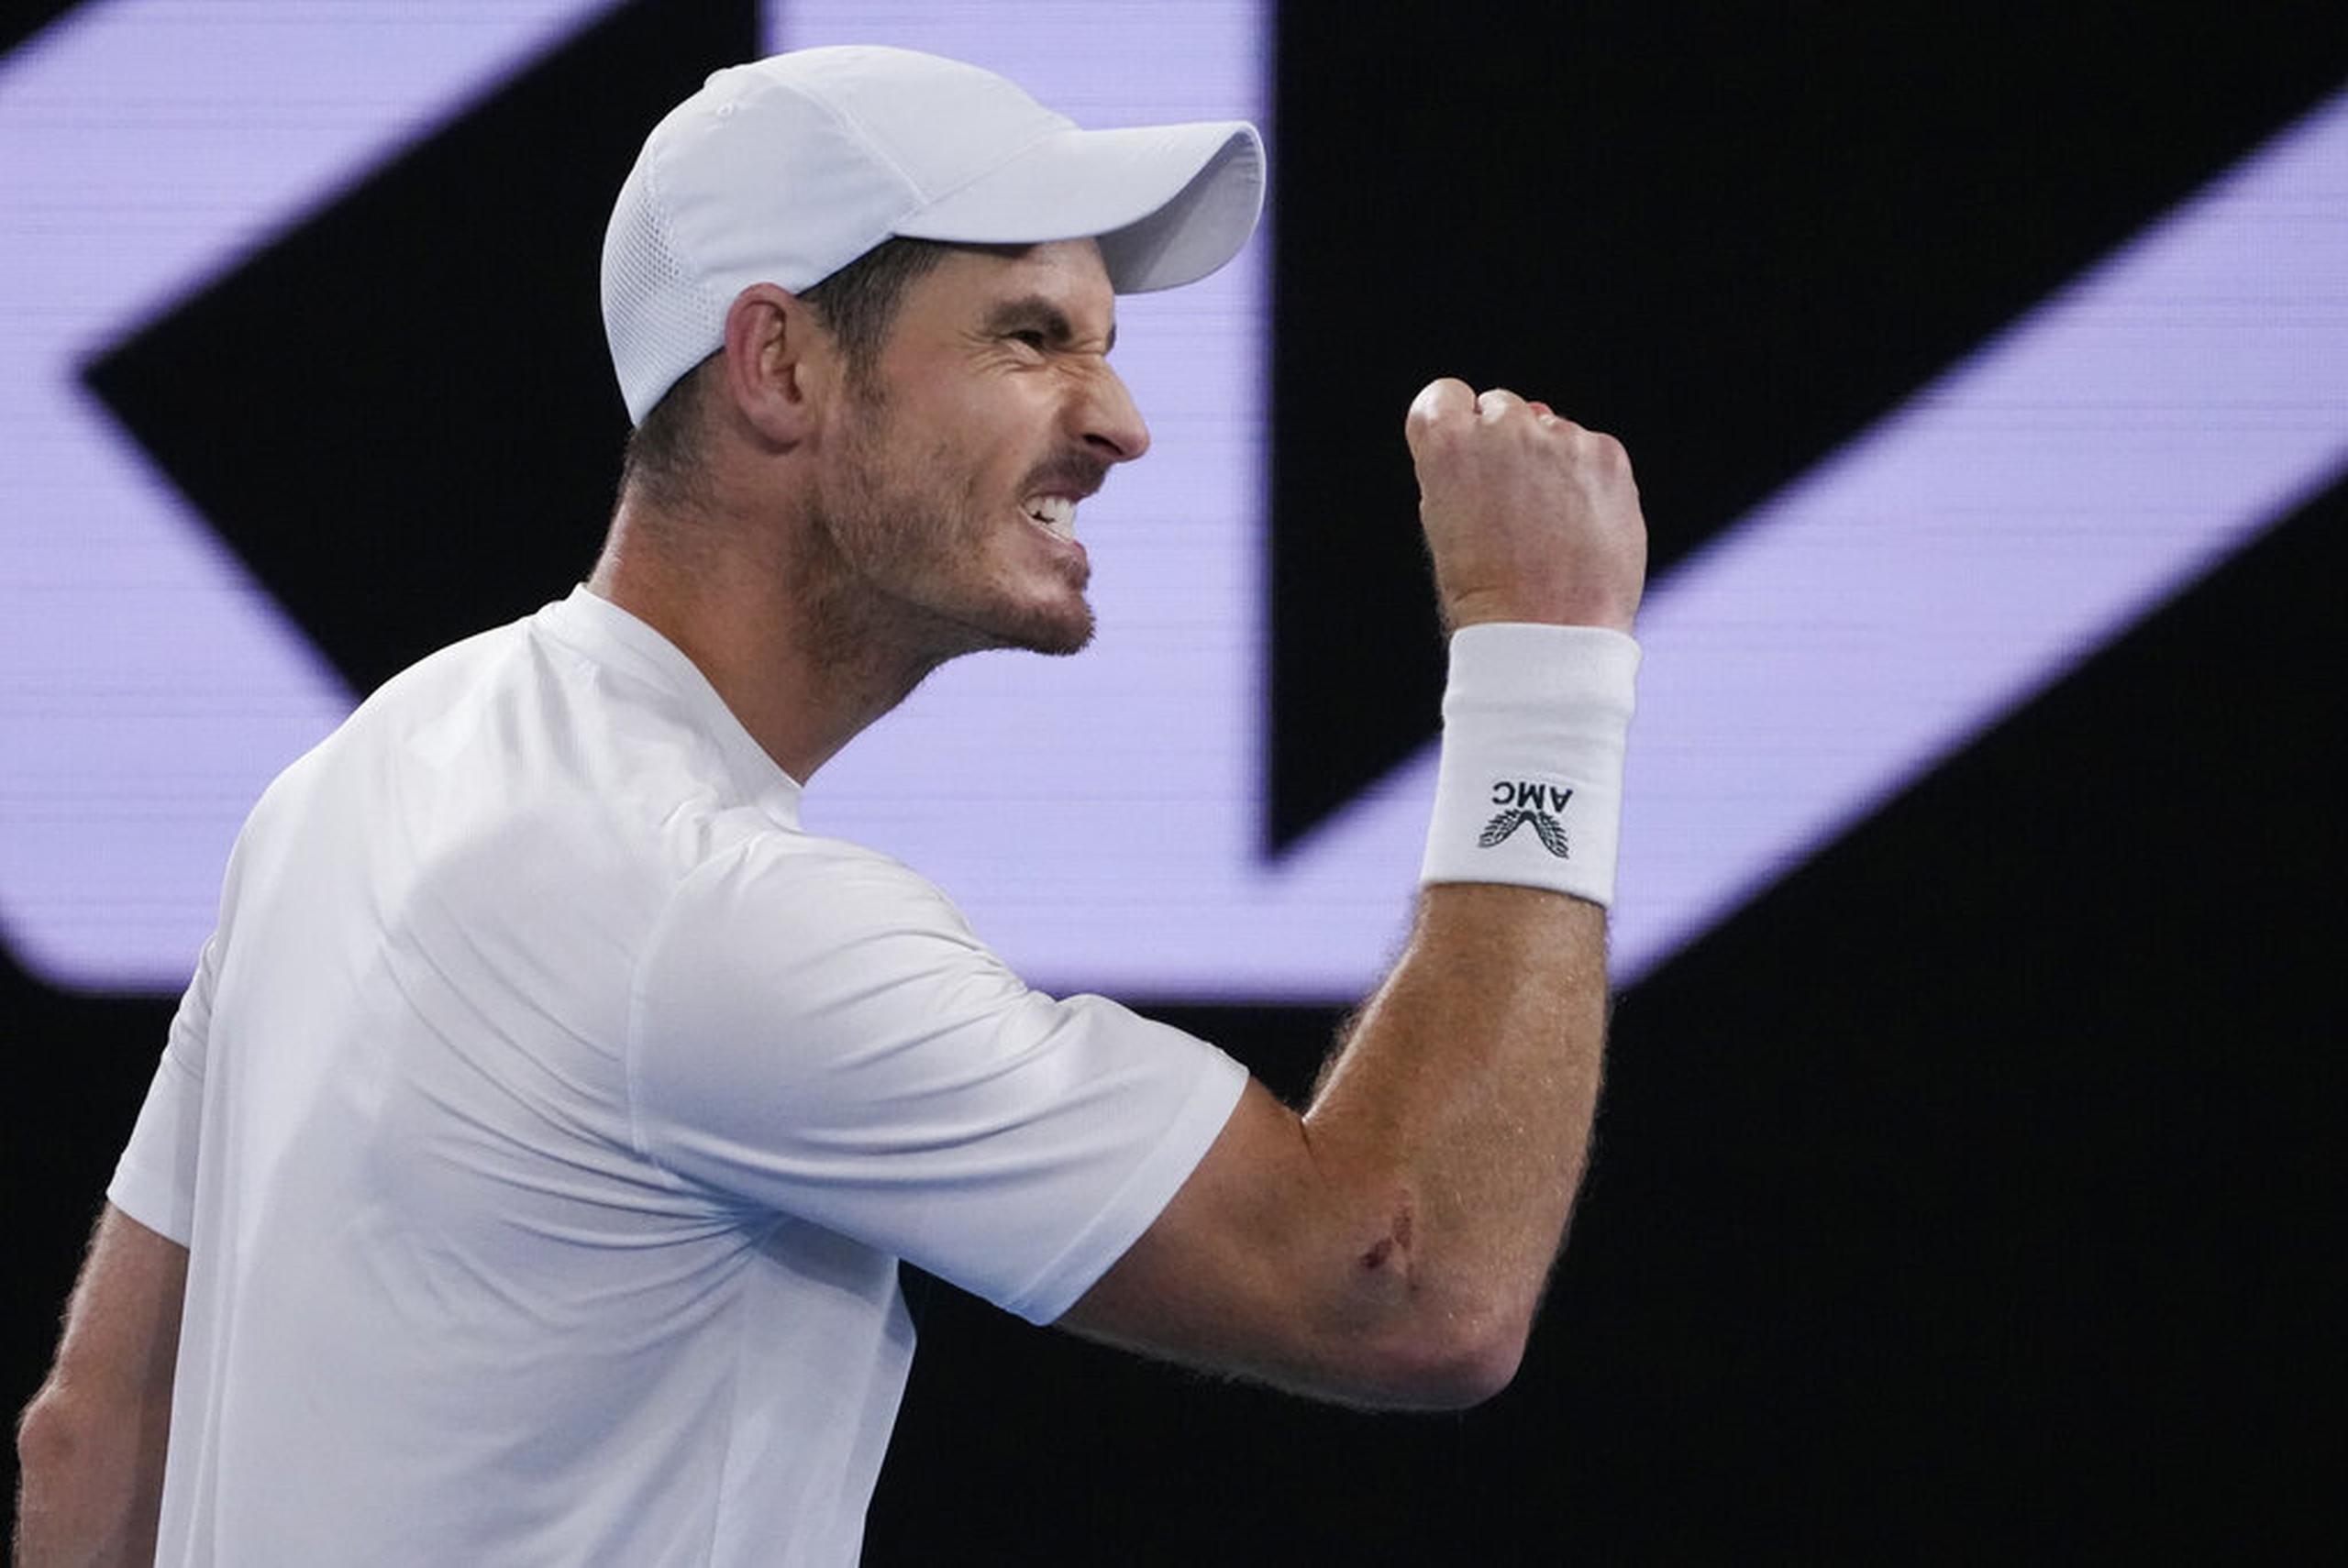 Huelga huella dactilar Ligadura Continúa la magia de Andy Murray en el Abierto de Australia - Primera Hora